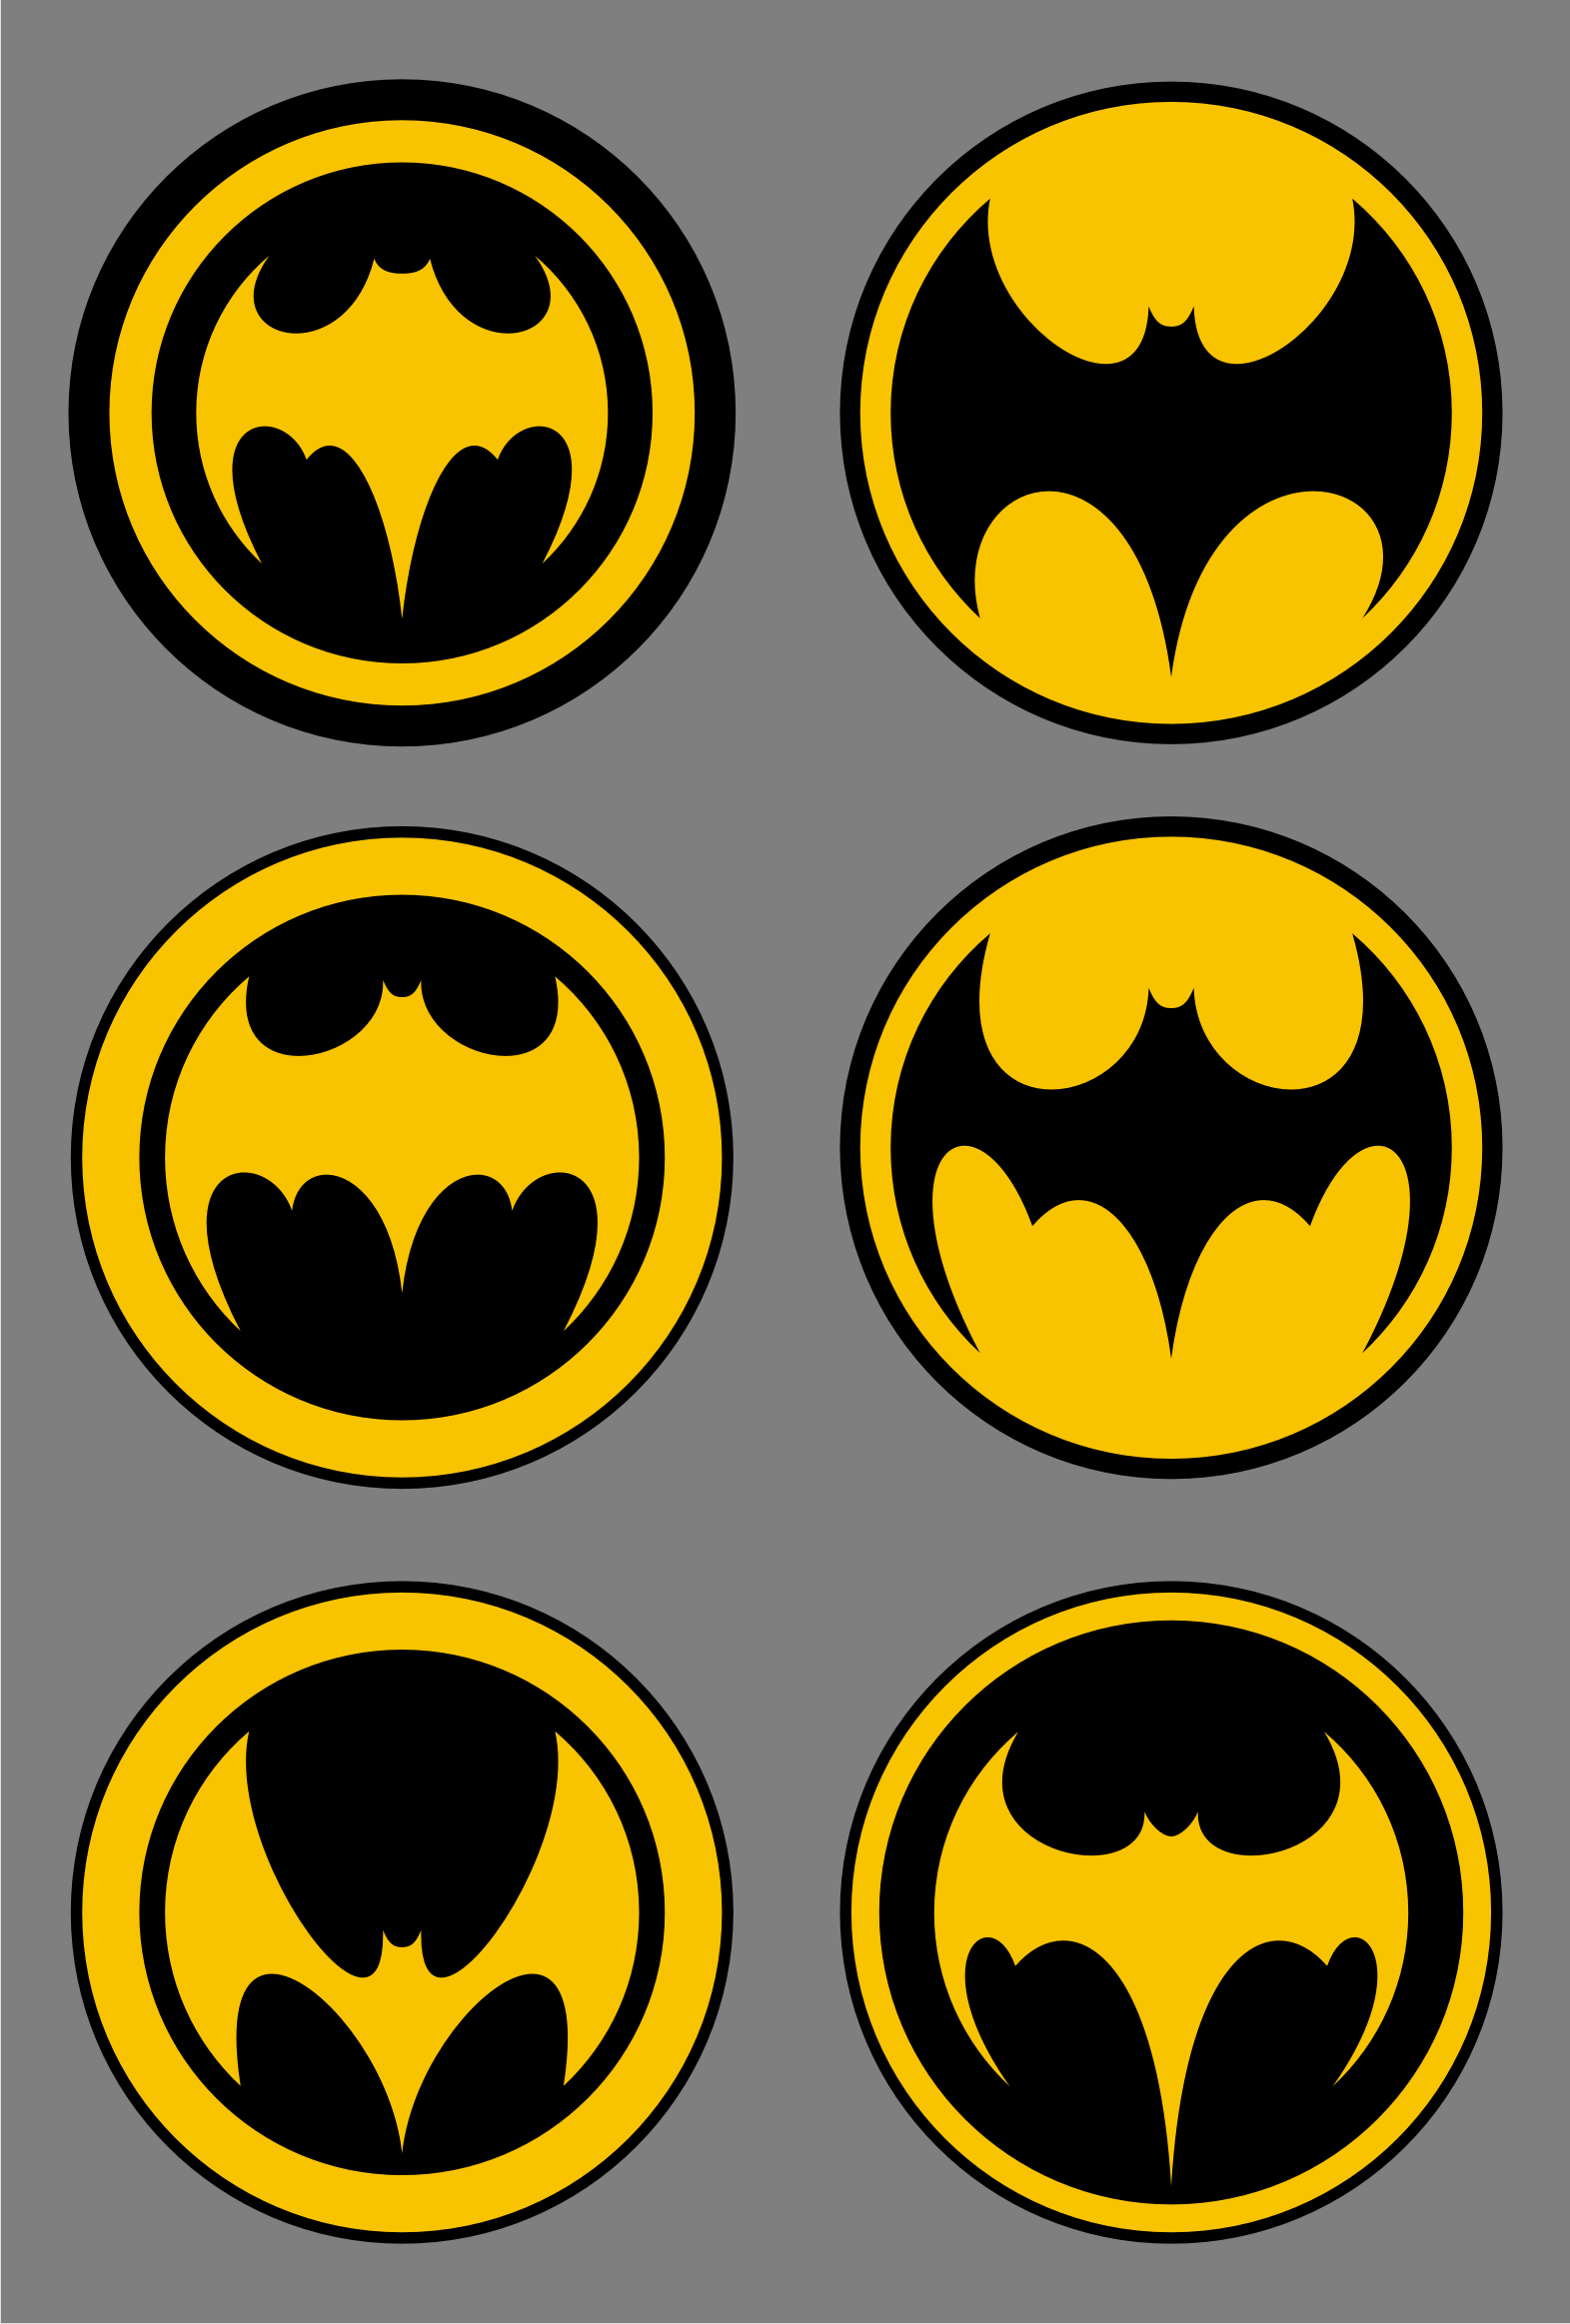 batman logos